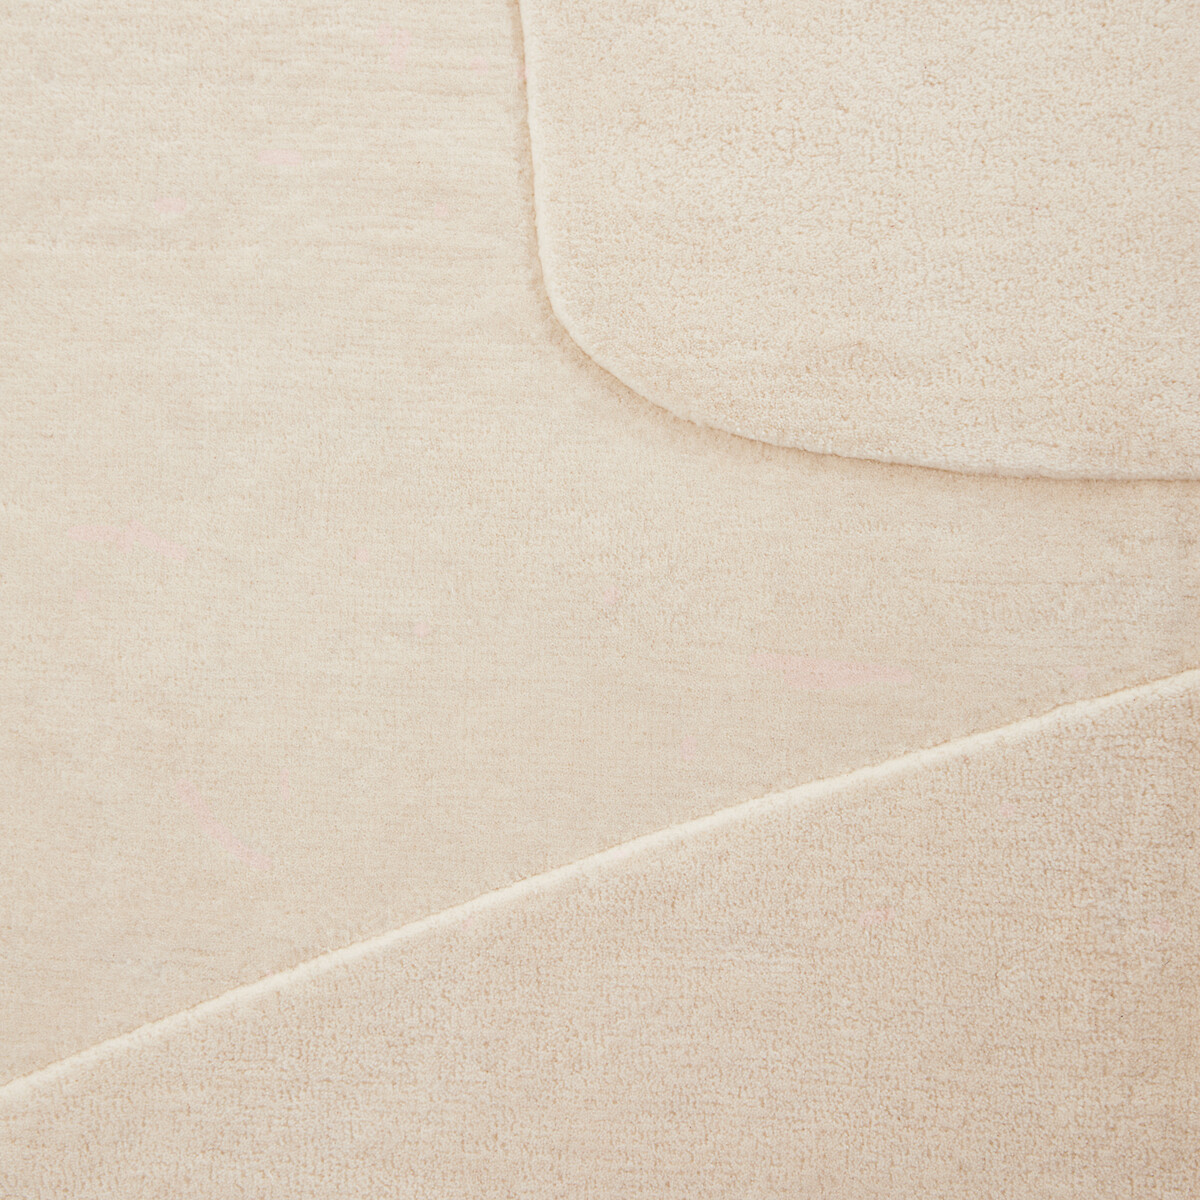 Ковер Современный из шерсти сотканный вручную Sahil 160 x 230 см бежевый LaRedoute, размер 160 x 230 см - фото 4